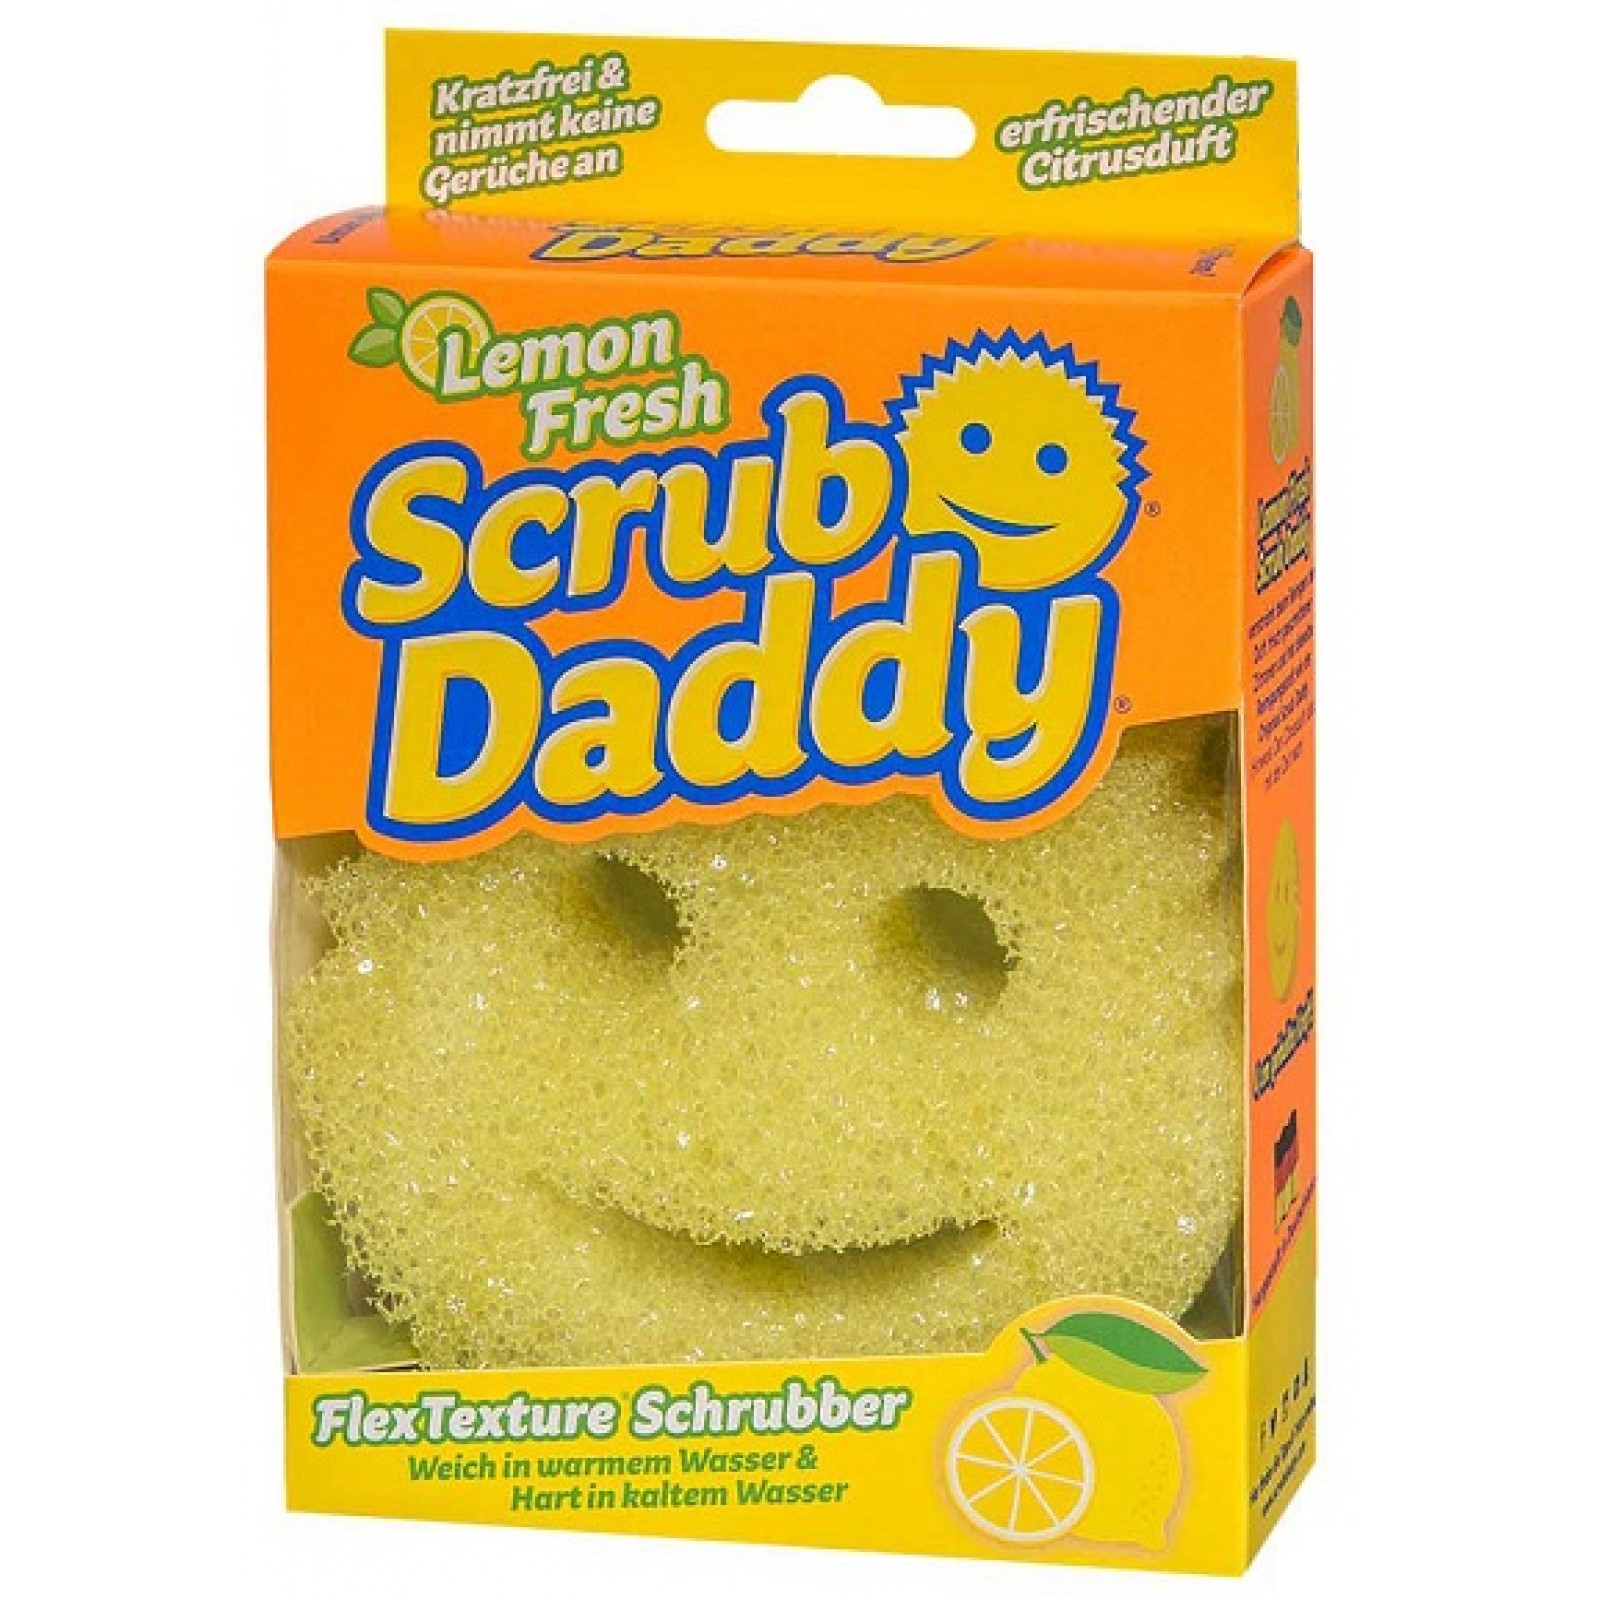 scrub paste scrub daddy